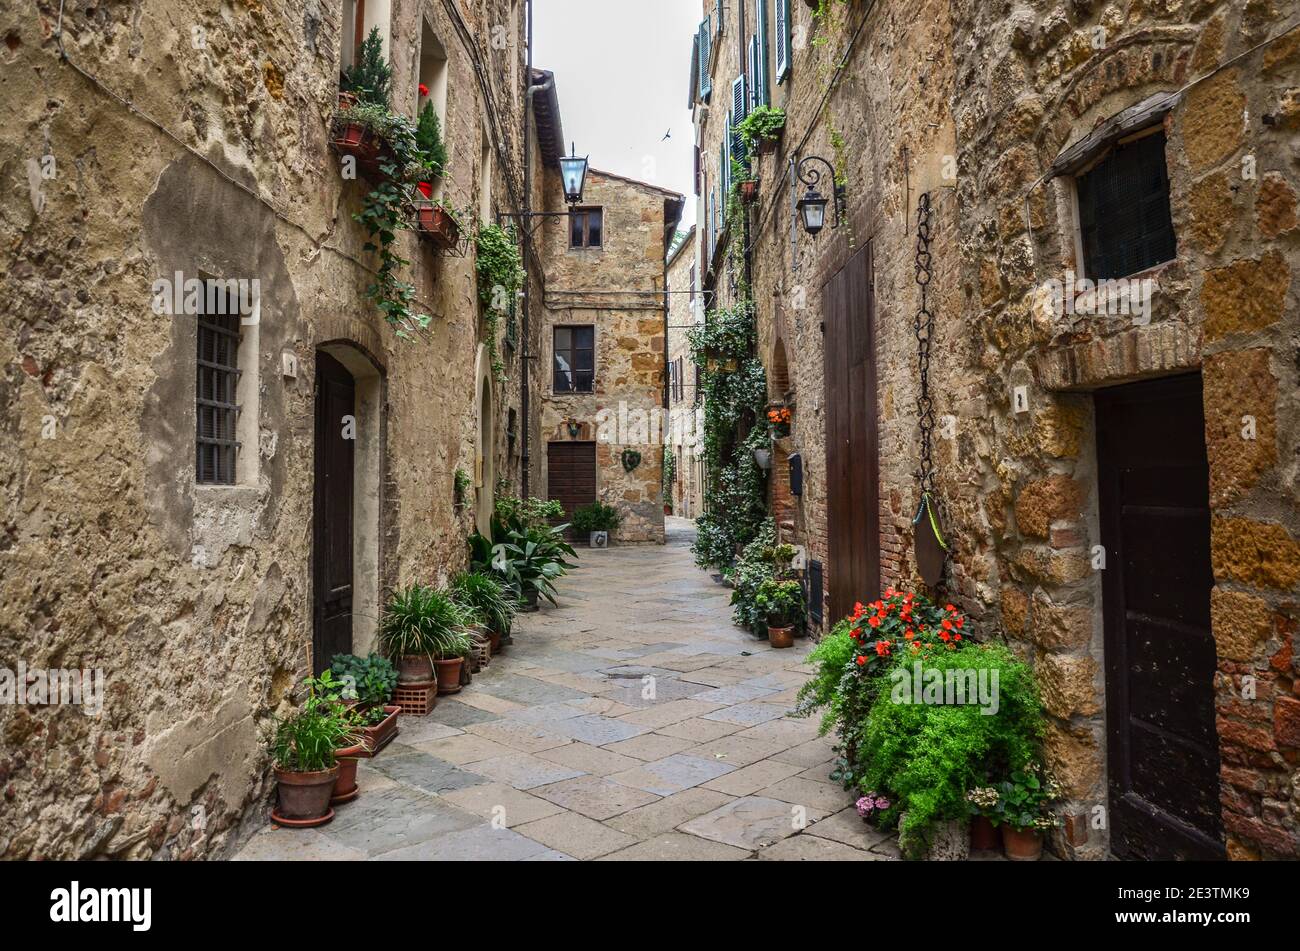 Belle vue sur les vieilles maisons traditionnelles et une allée idyllique dans la ville historique, en Italie. Photo de haute qualité Banque D'Images